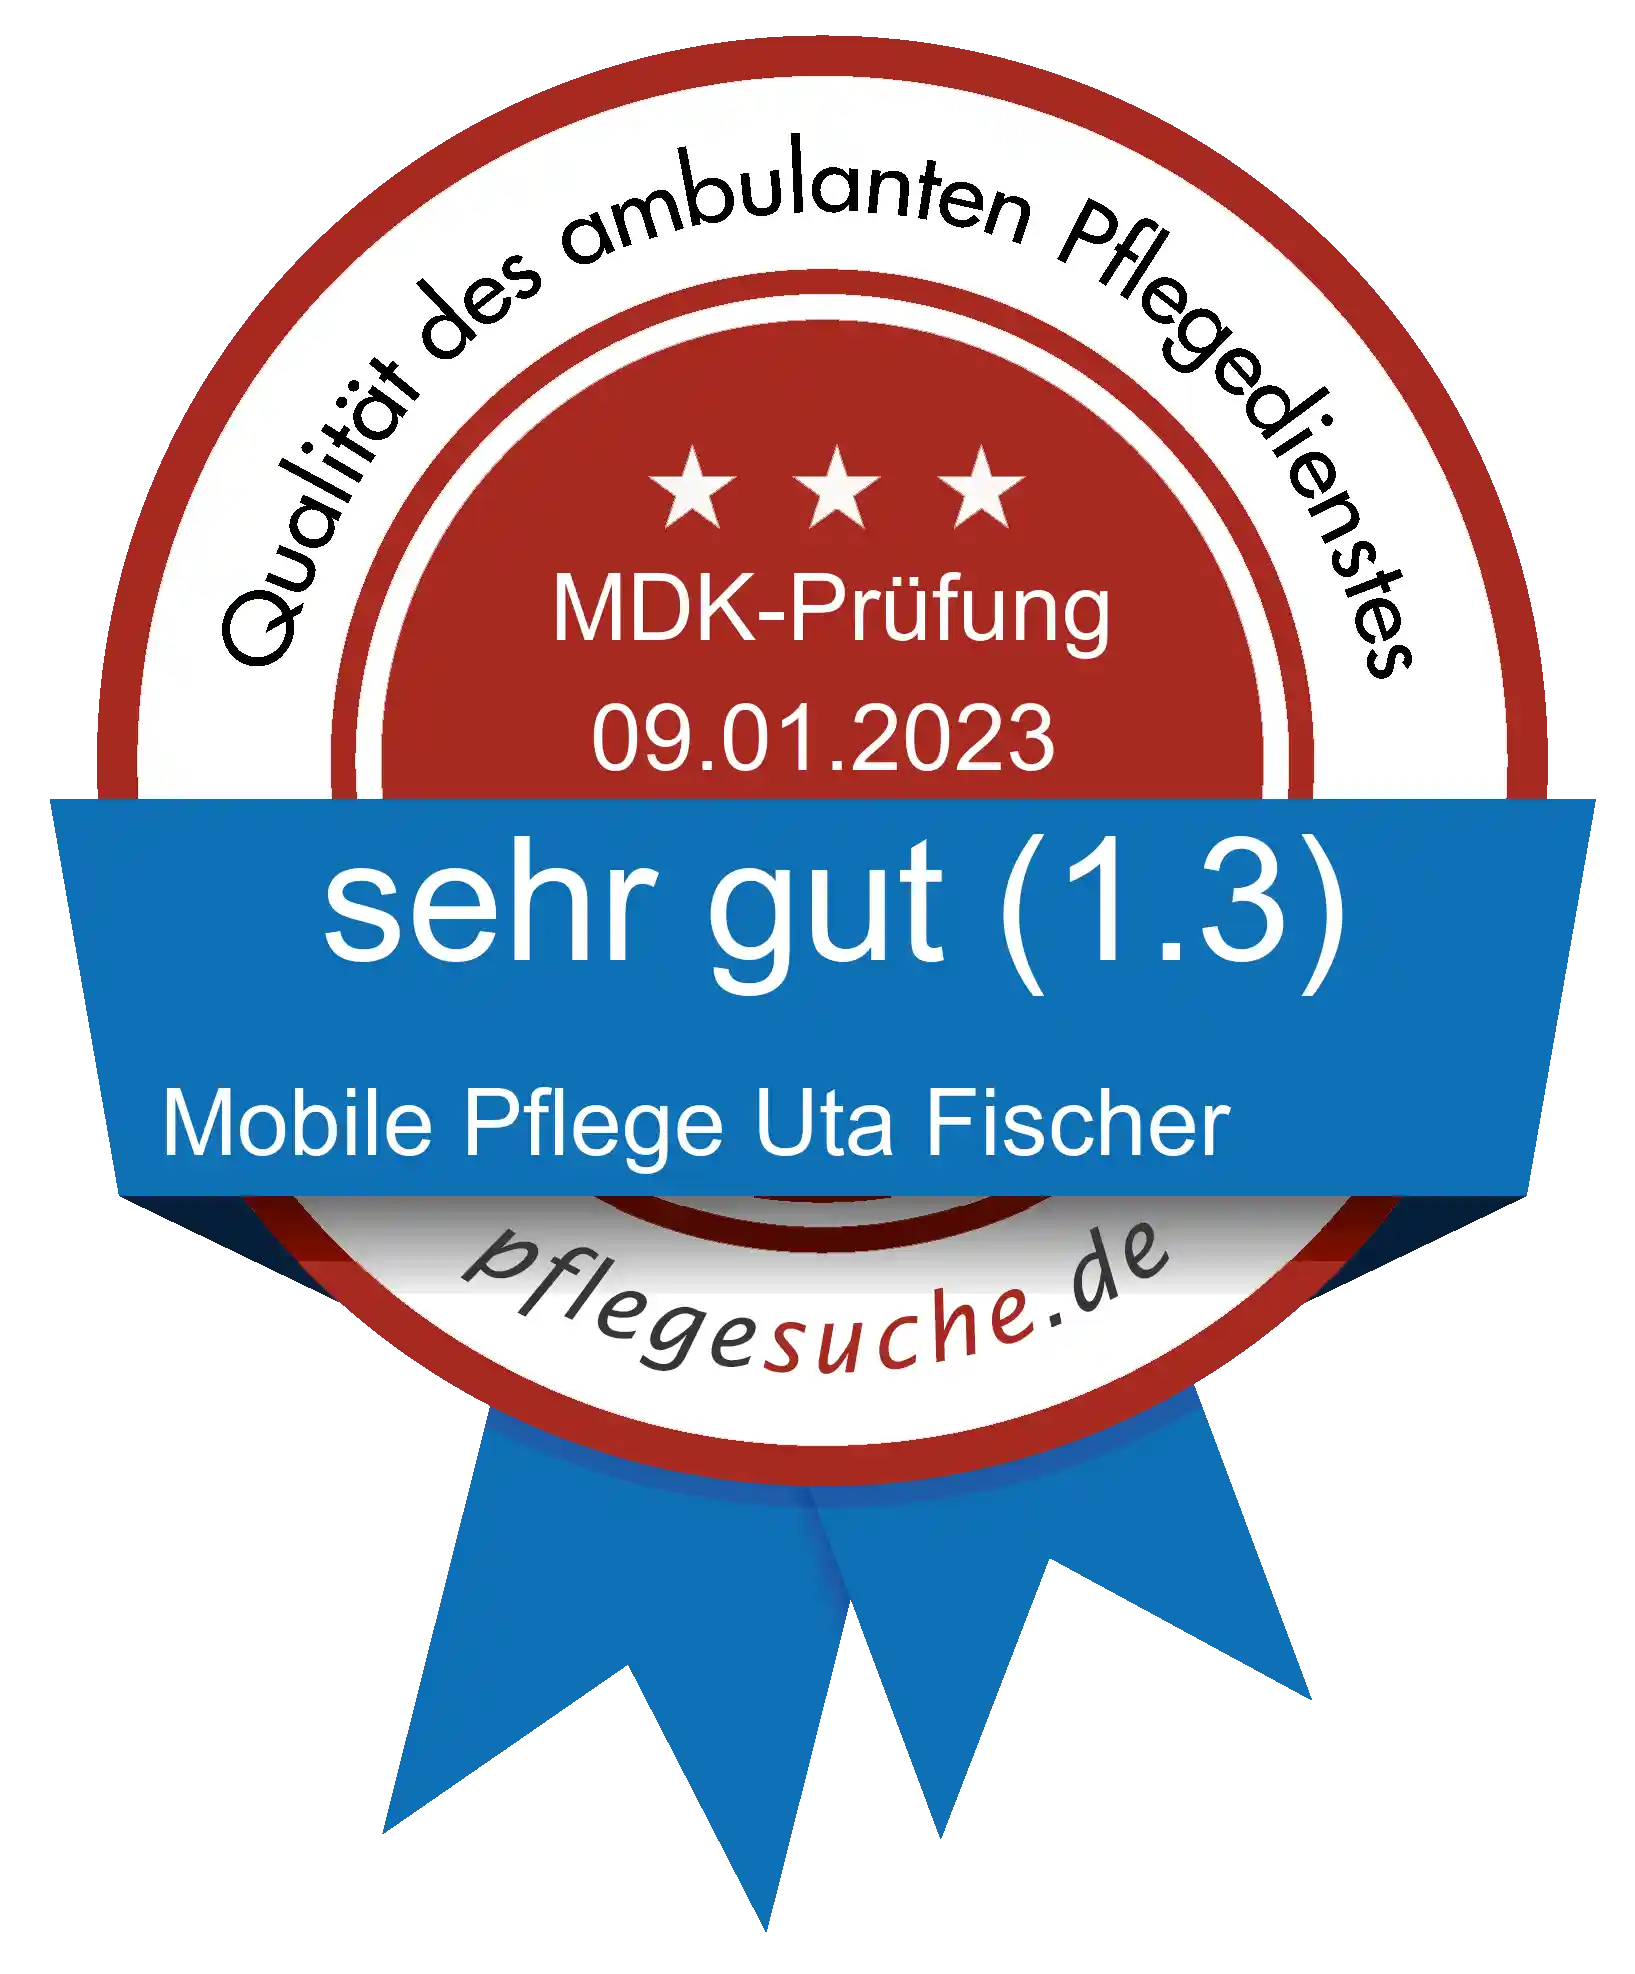 Siegel Benotung: Mobile Pflege Uta Fischer